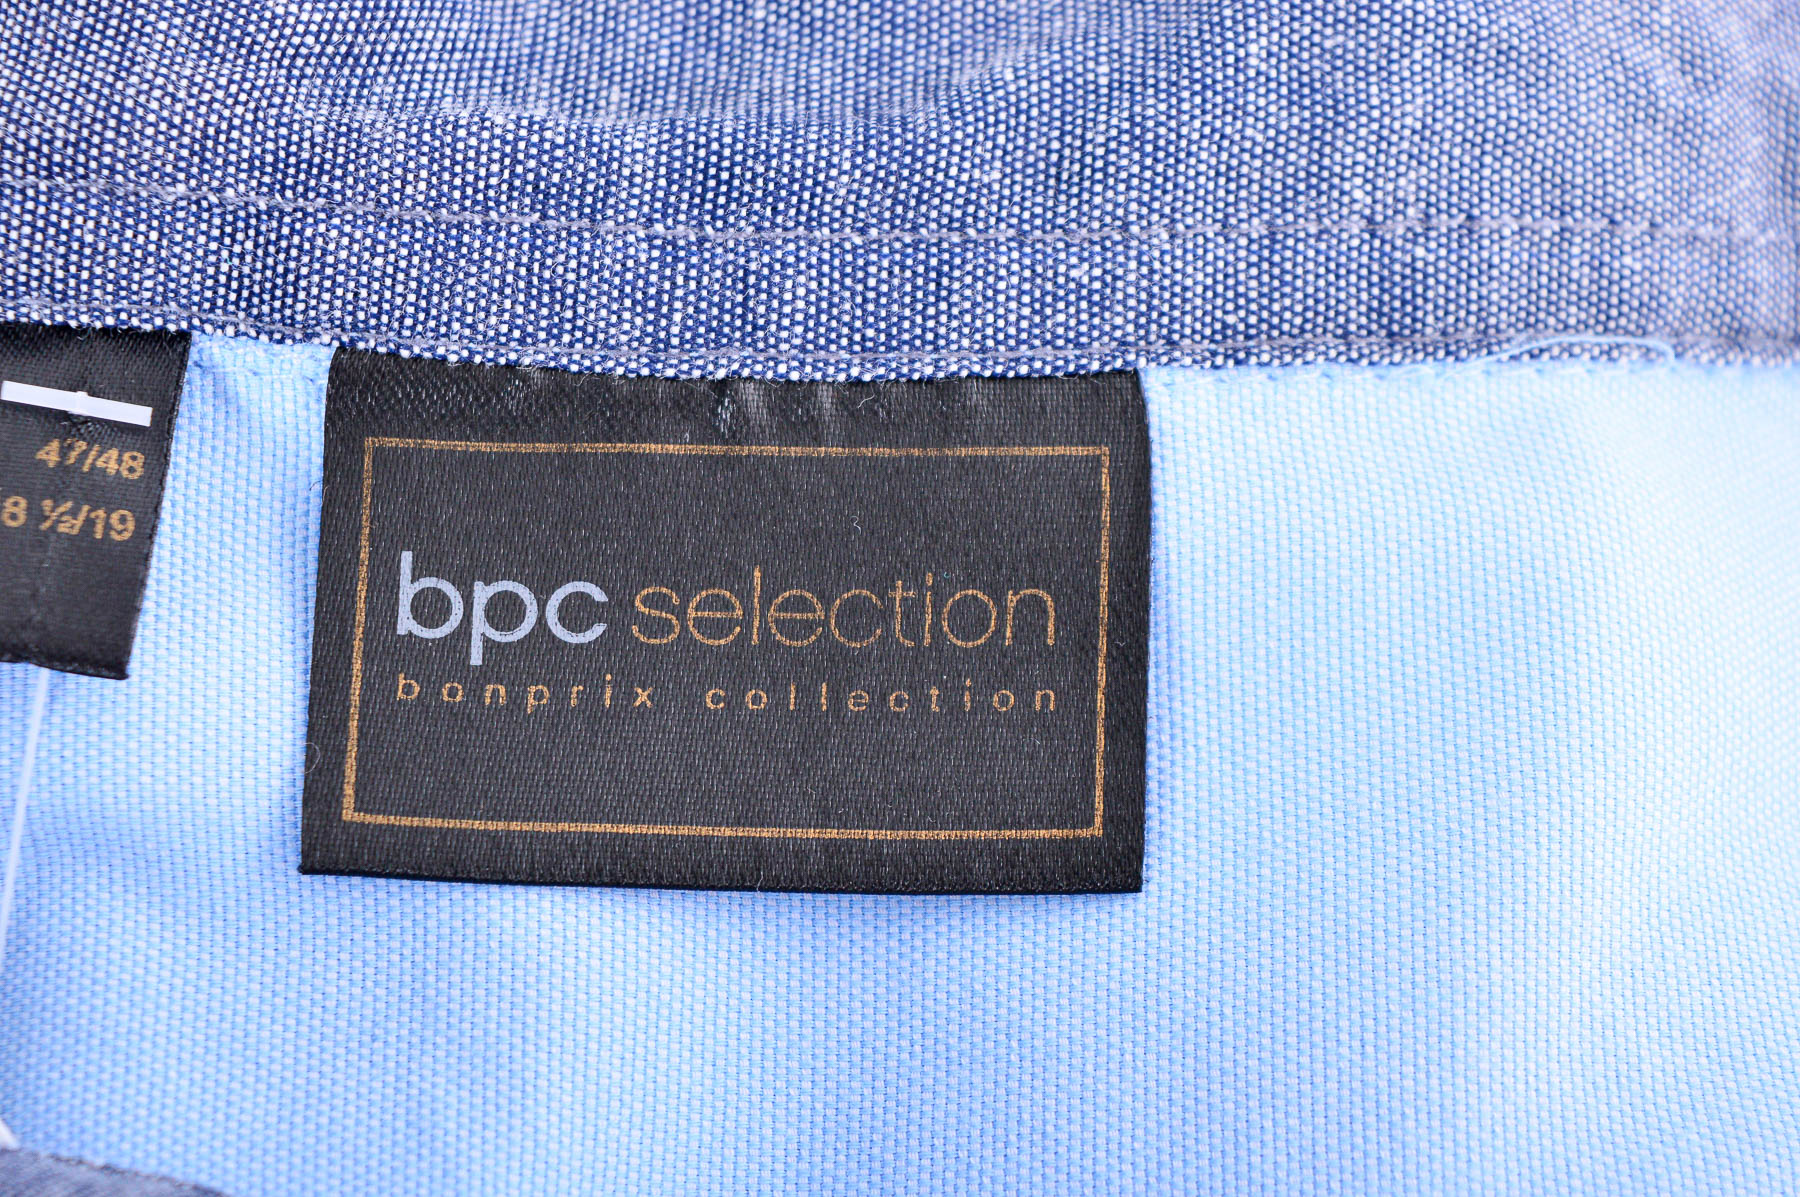 Ανδρικό πουκάμισο - Bpc selection bonprix collection - 2